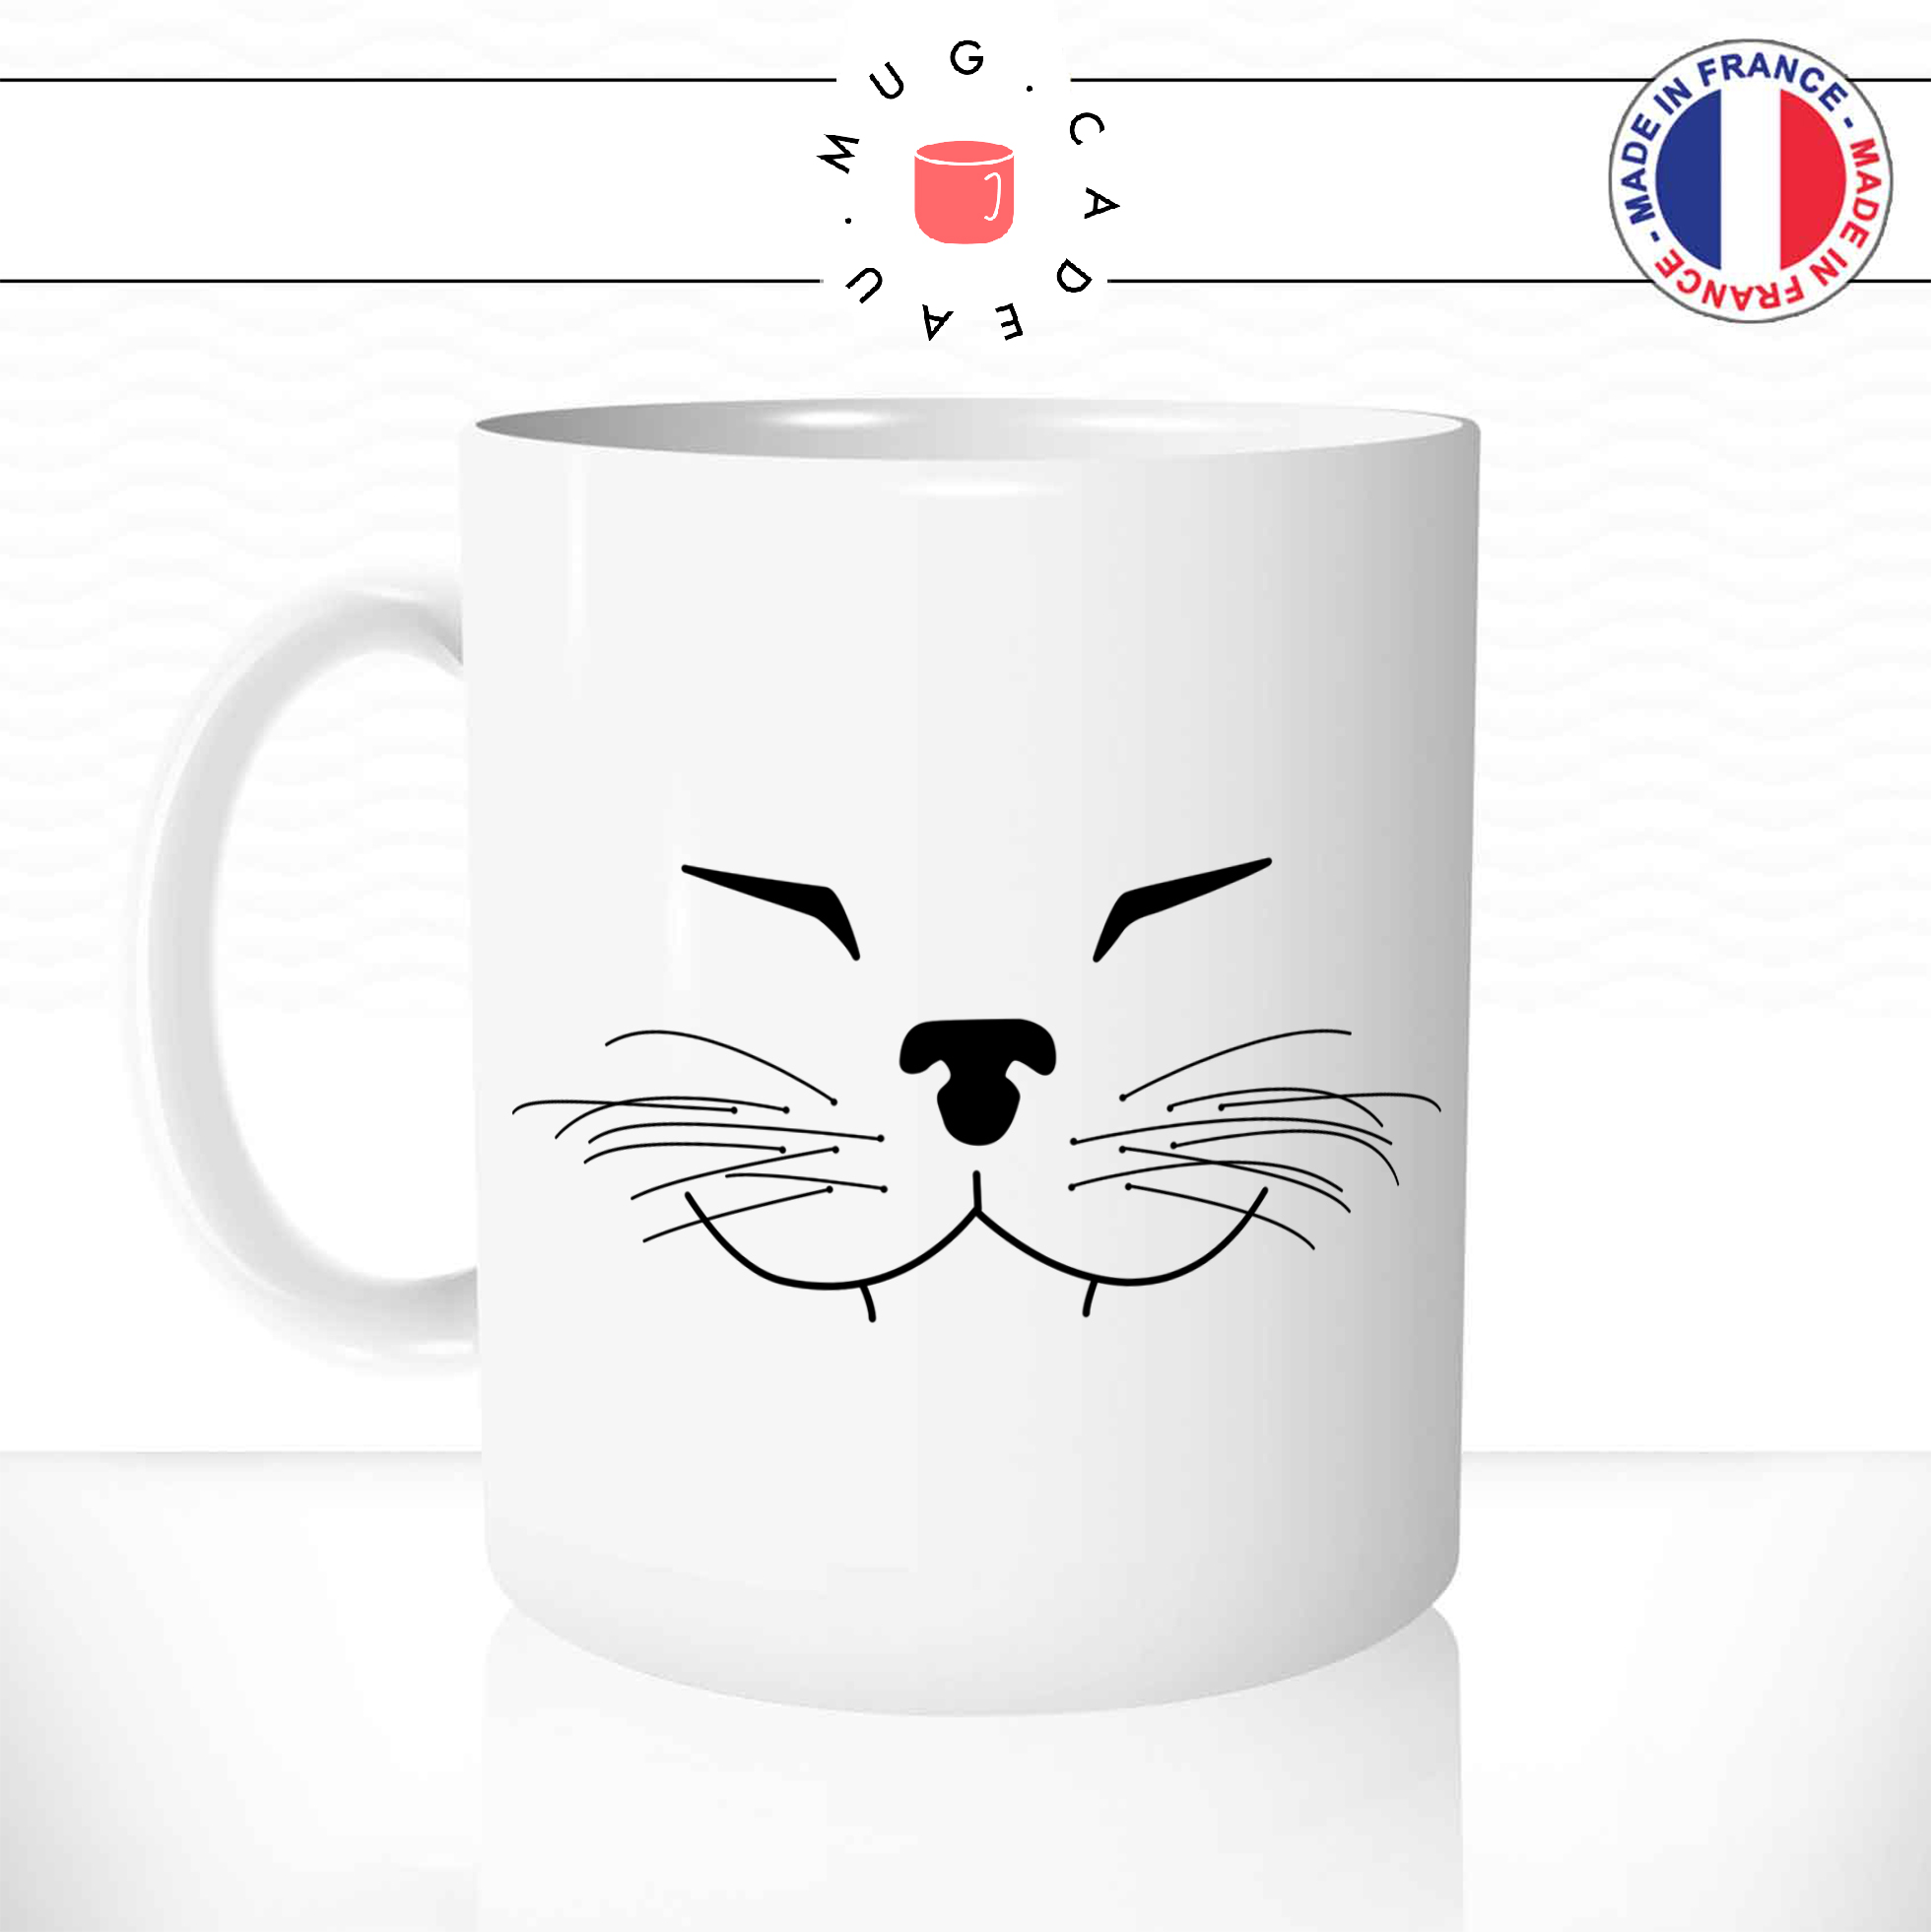 mug-tasse-ref32-chat-noir-tete-moustache-content-sourire-cafe-the-mugs-tasses-personnalise-anse-gauche